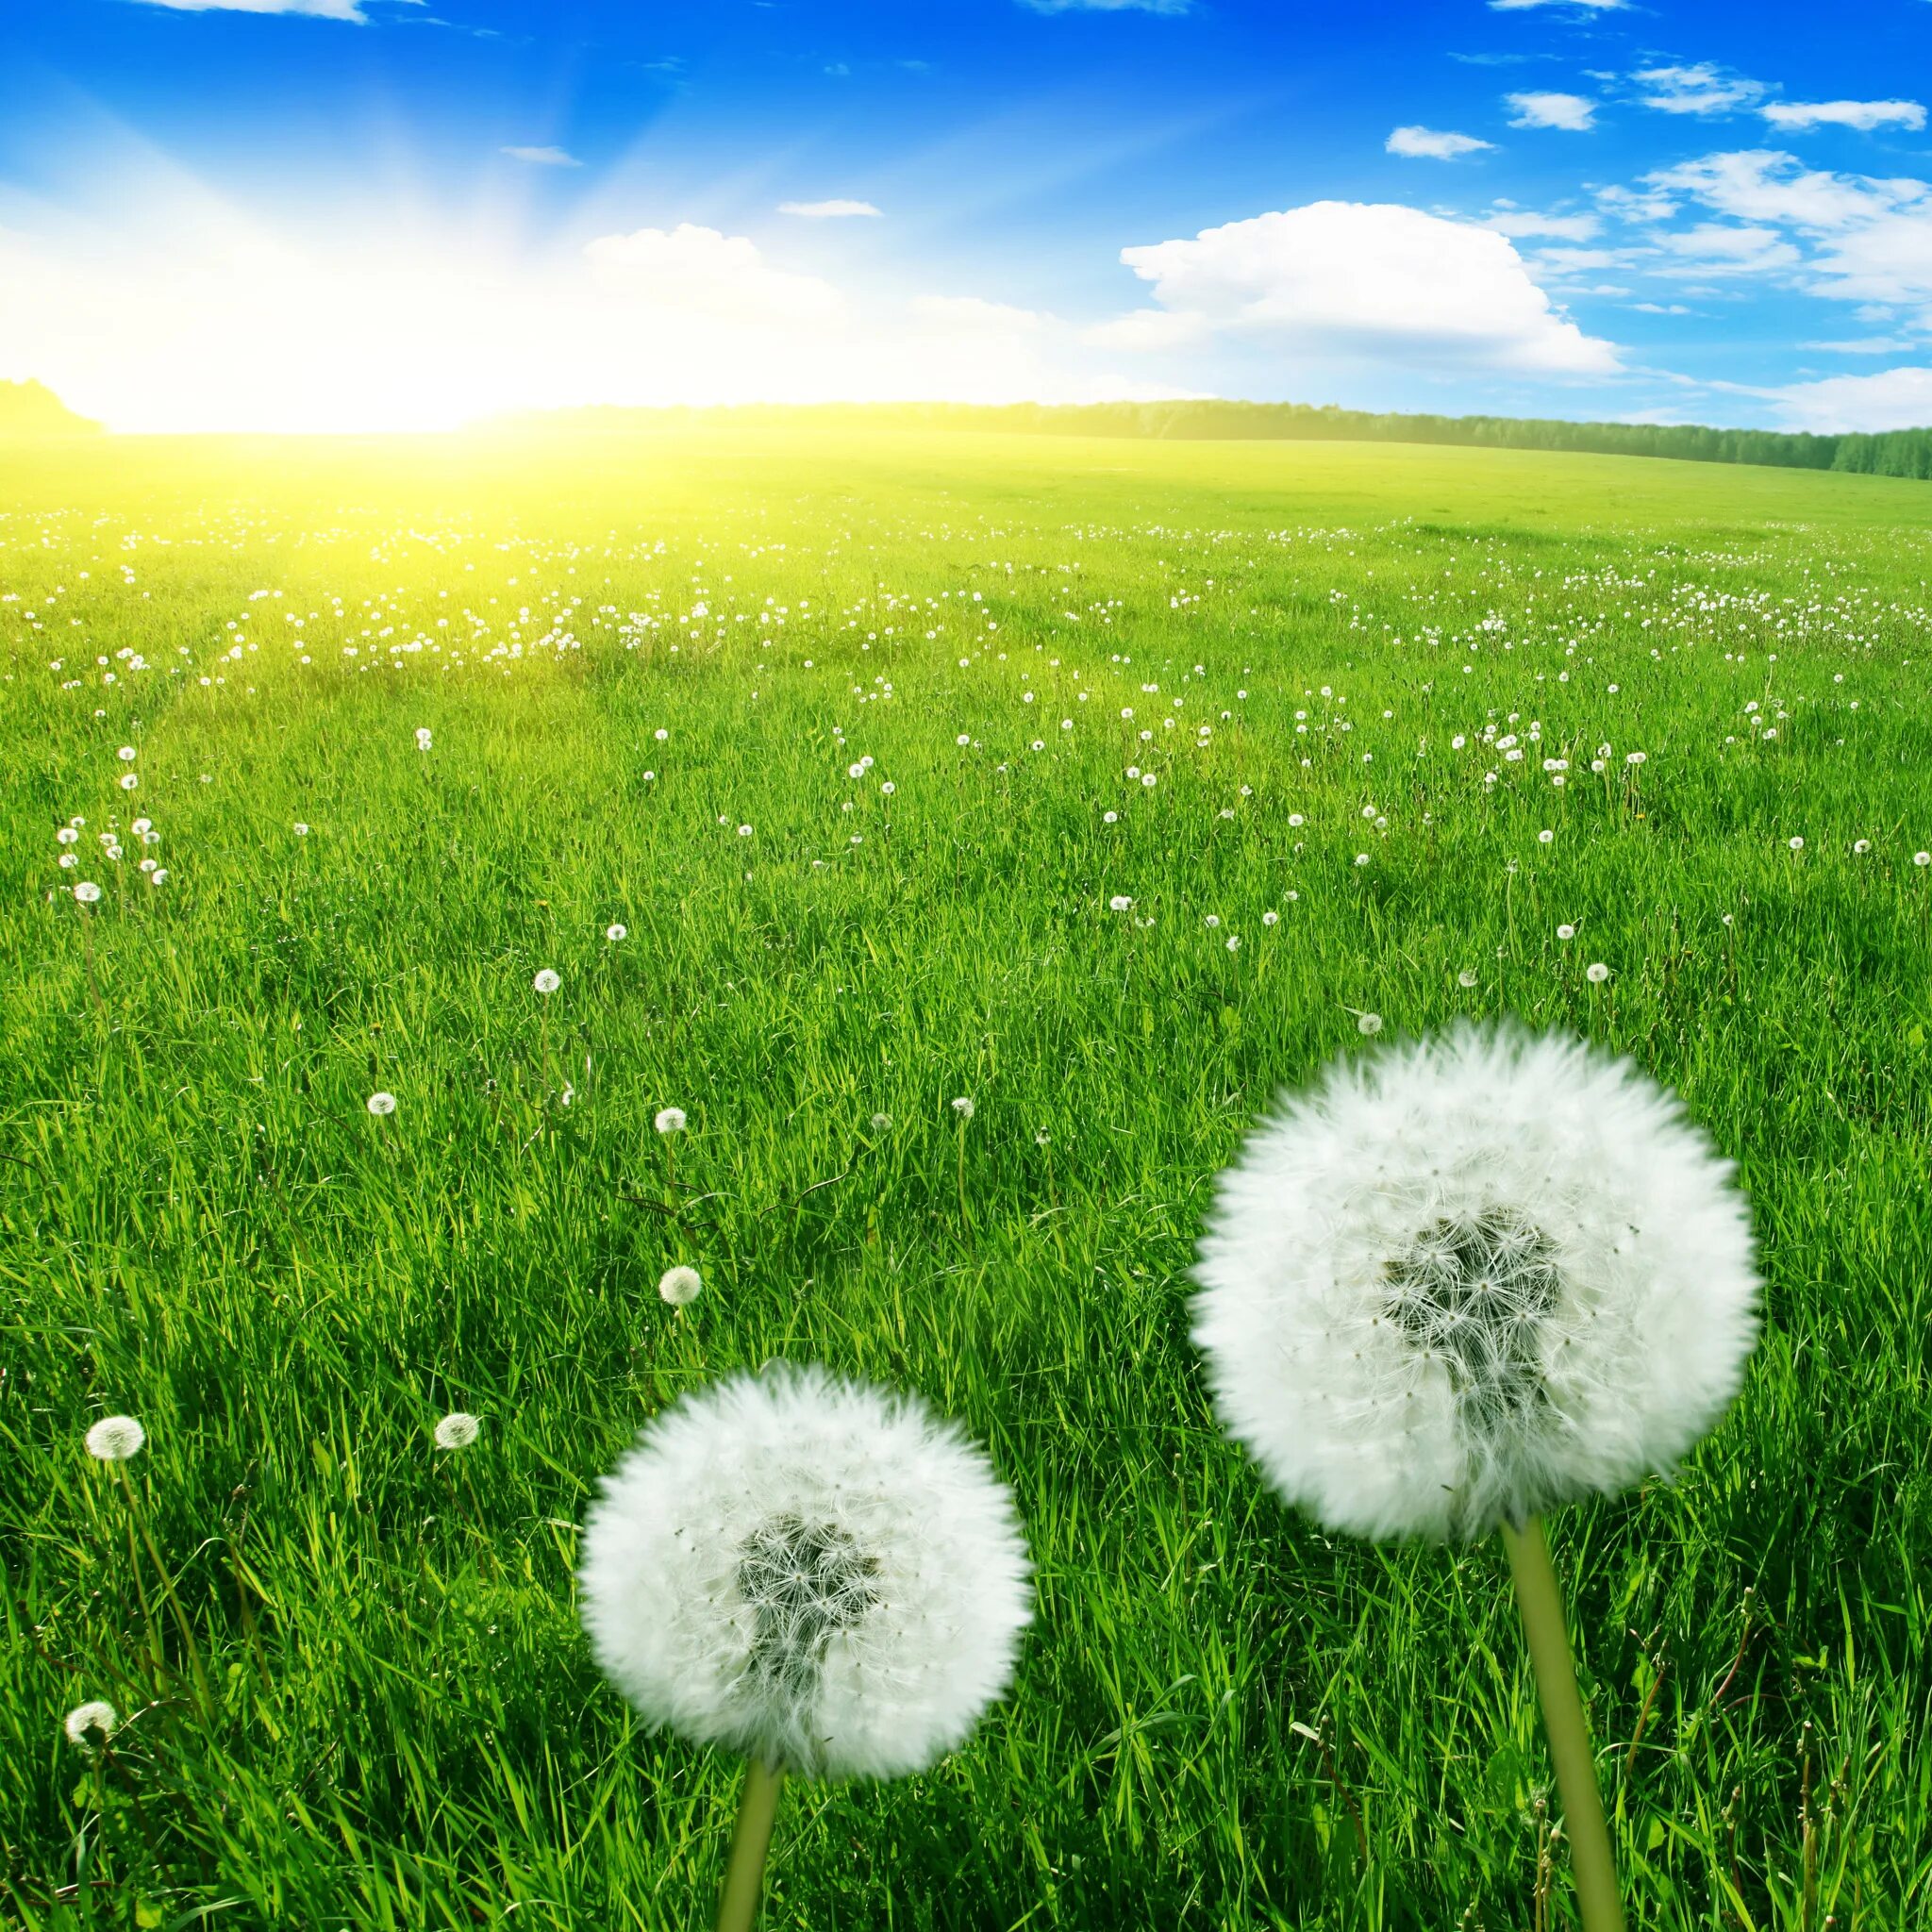 Доброе утро картинки позитивные с природой. Тянь-Шанский одуванчик. Одуванчик белый. Одуванчики в траве. Одуванчики на зеленой траве.